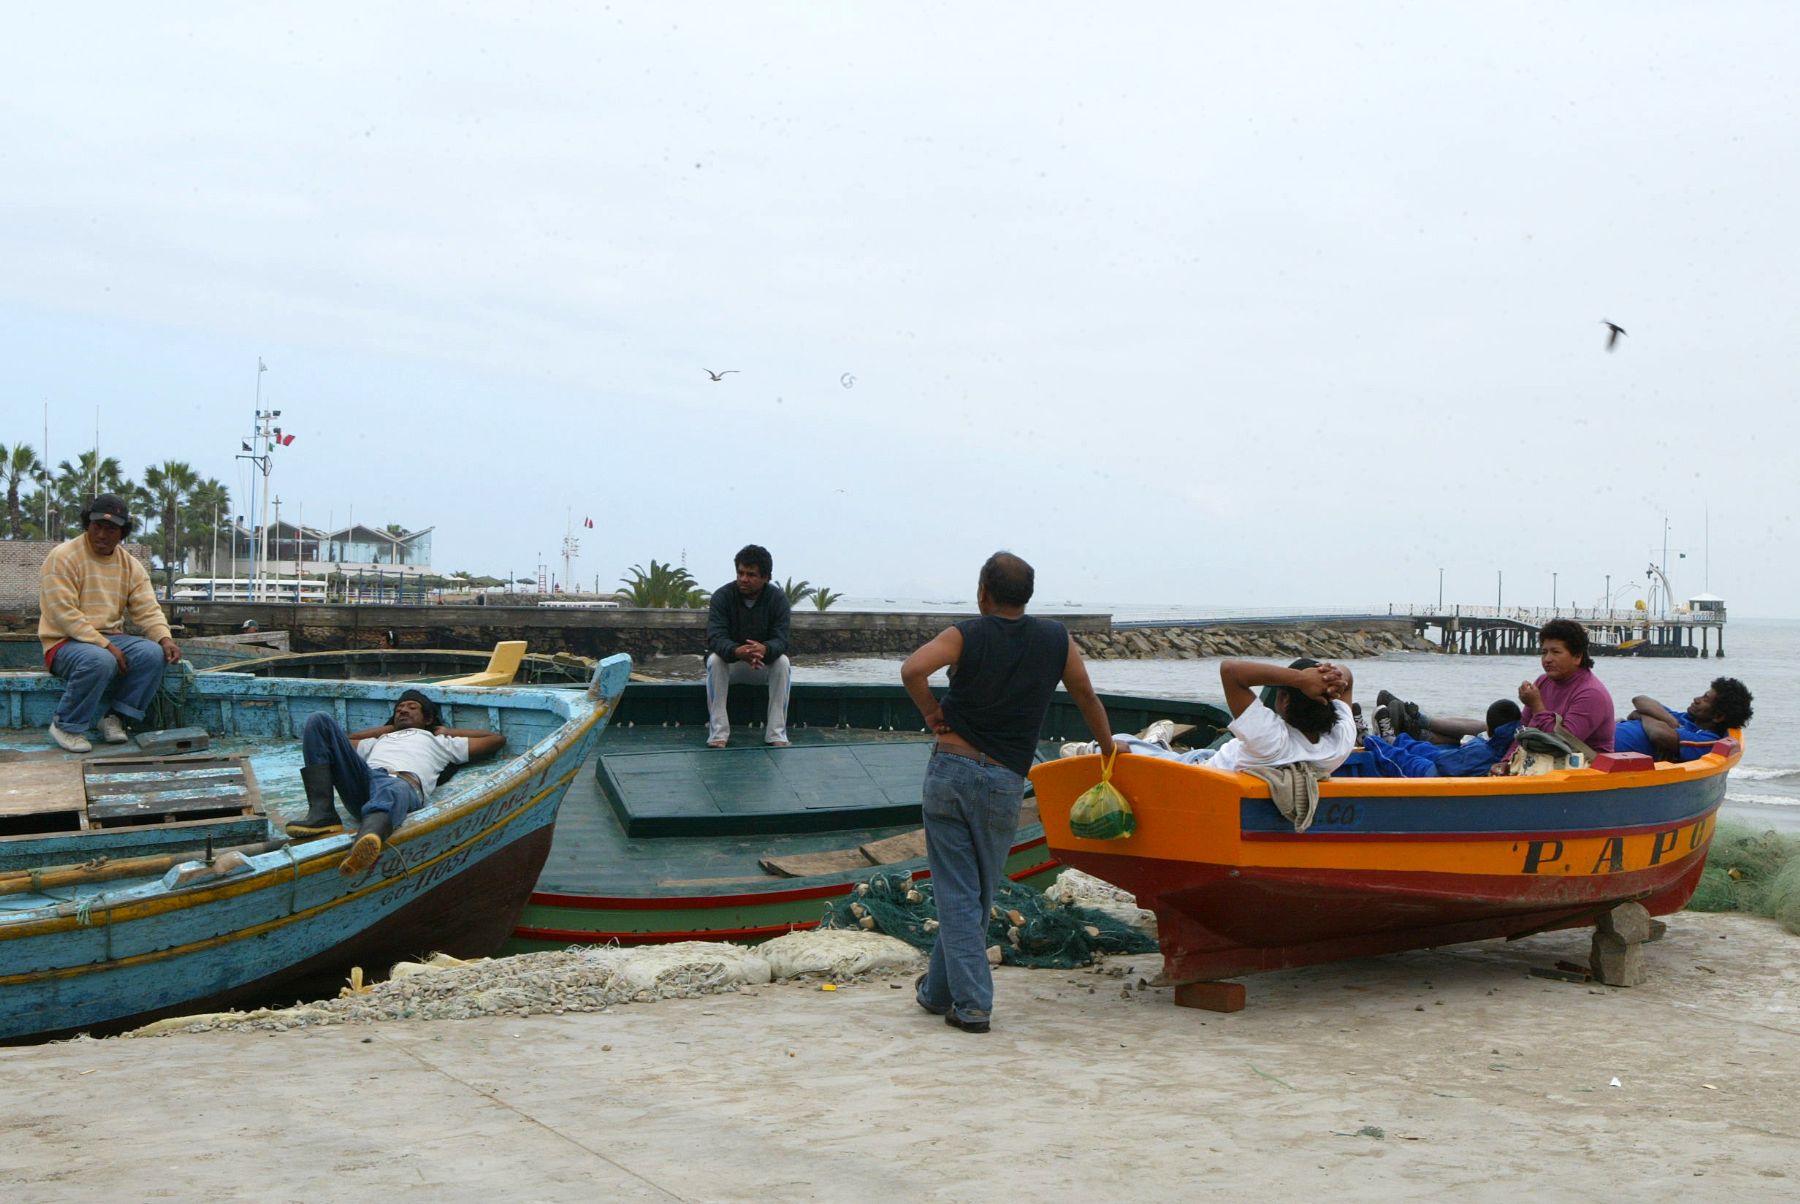 Un total de 11 puertos del litoral norte y centro del país fueron cerrados como medida de prevención por la presencia de oleajes ligeros, informó la Dirección de Hidrografía y Navegación (DHN) de la Marina de Guerra del Perú. ANDINA/archivo